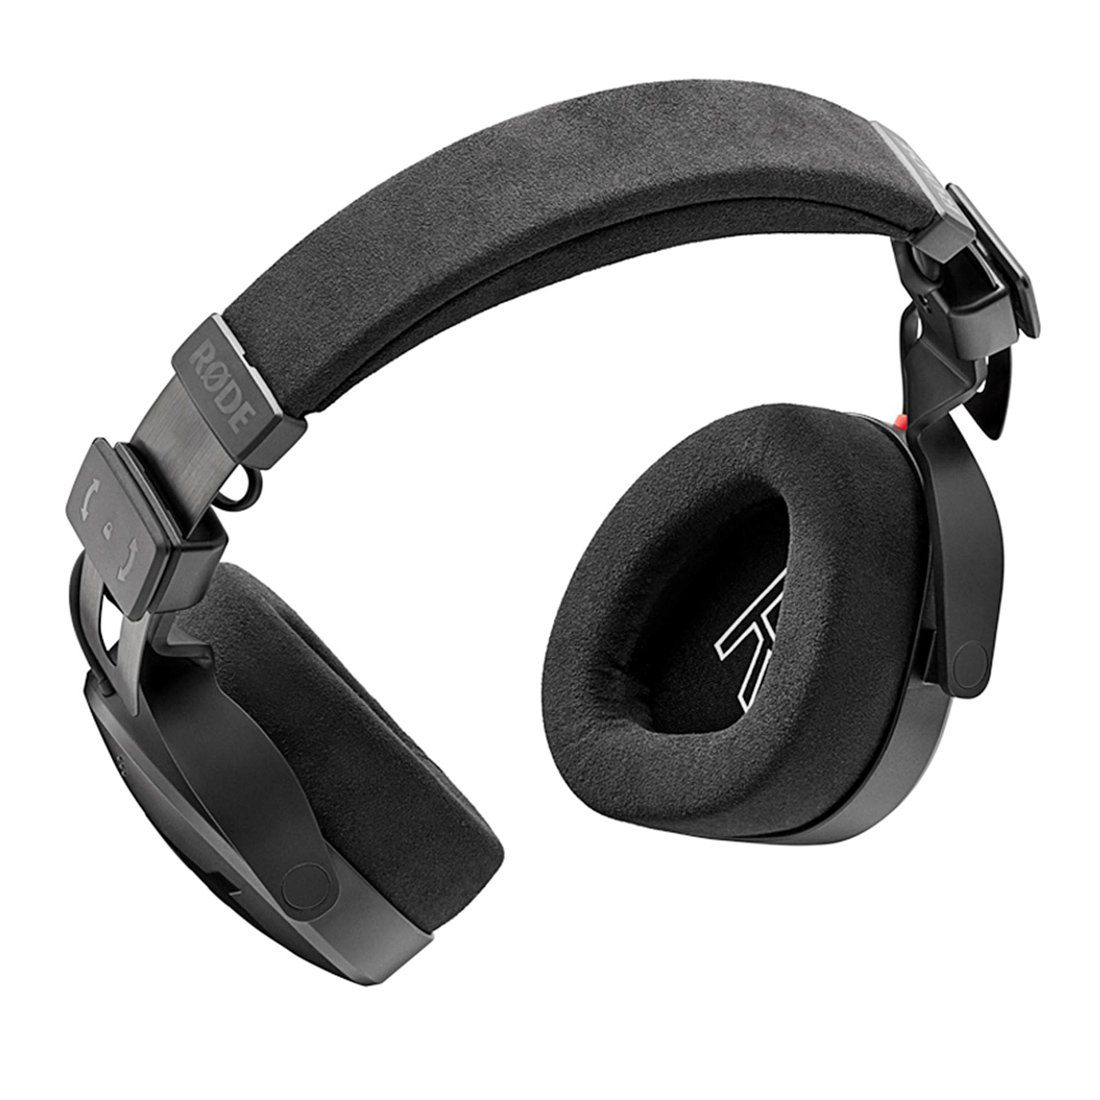 RODE Microphones NTH-100 mit Kopfhörer mitTuch passive Schwarz Tuch, Geräuschunterdrückung) (keepdrum 2.4m Kabel